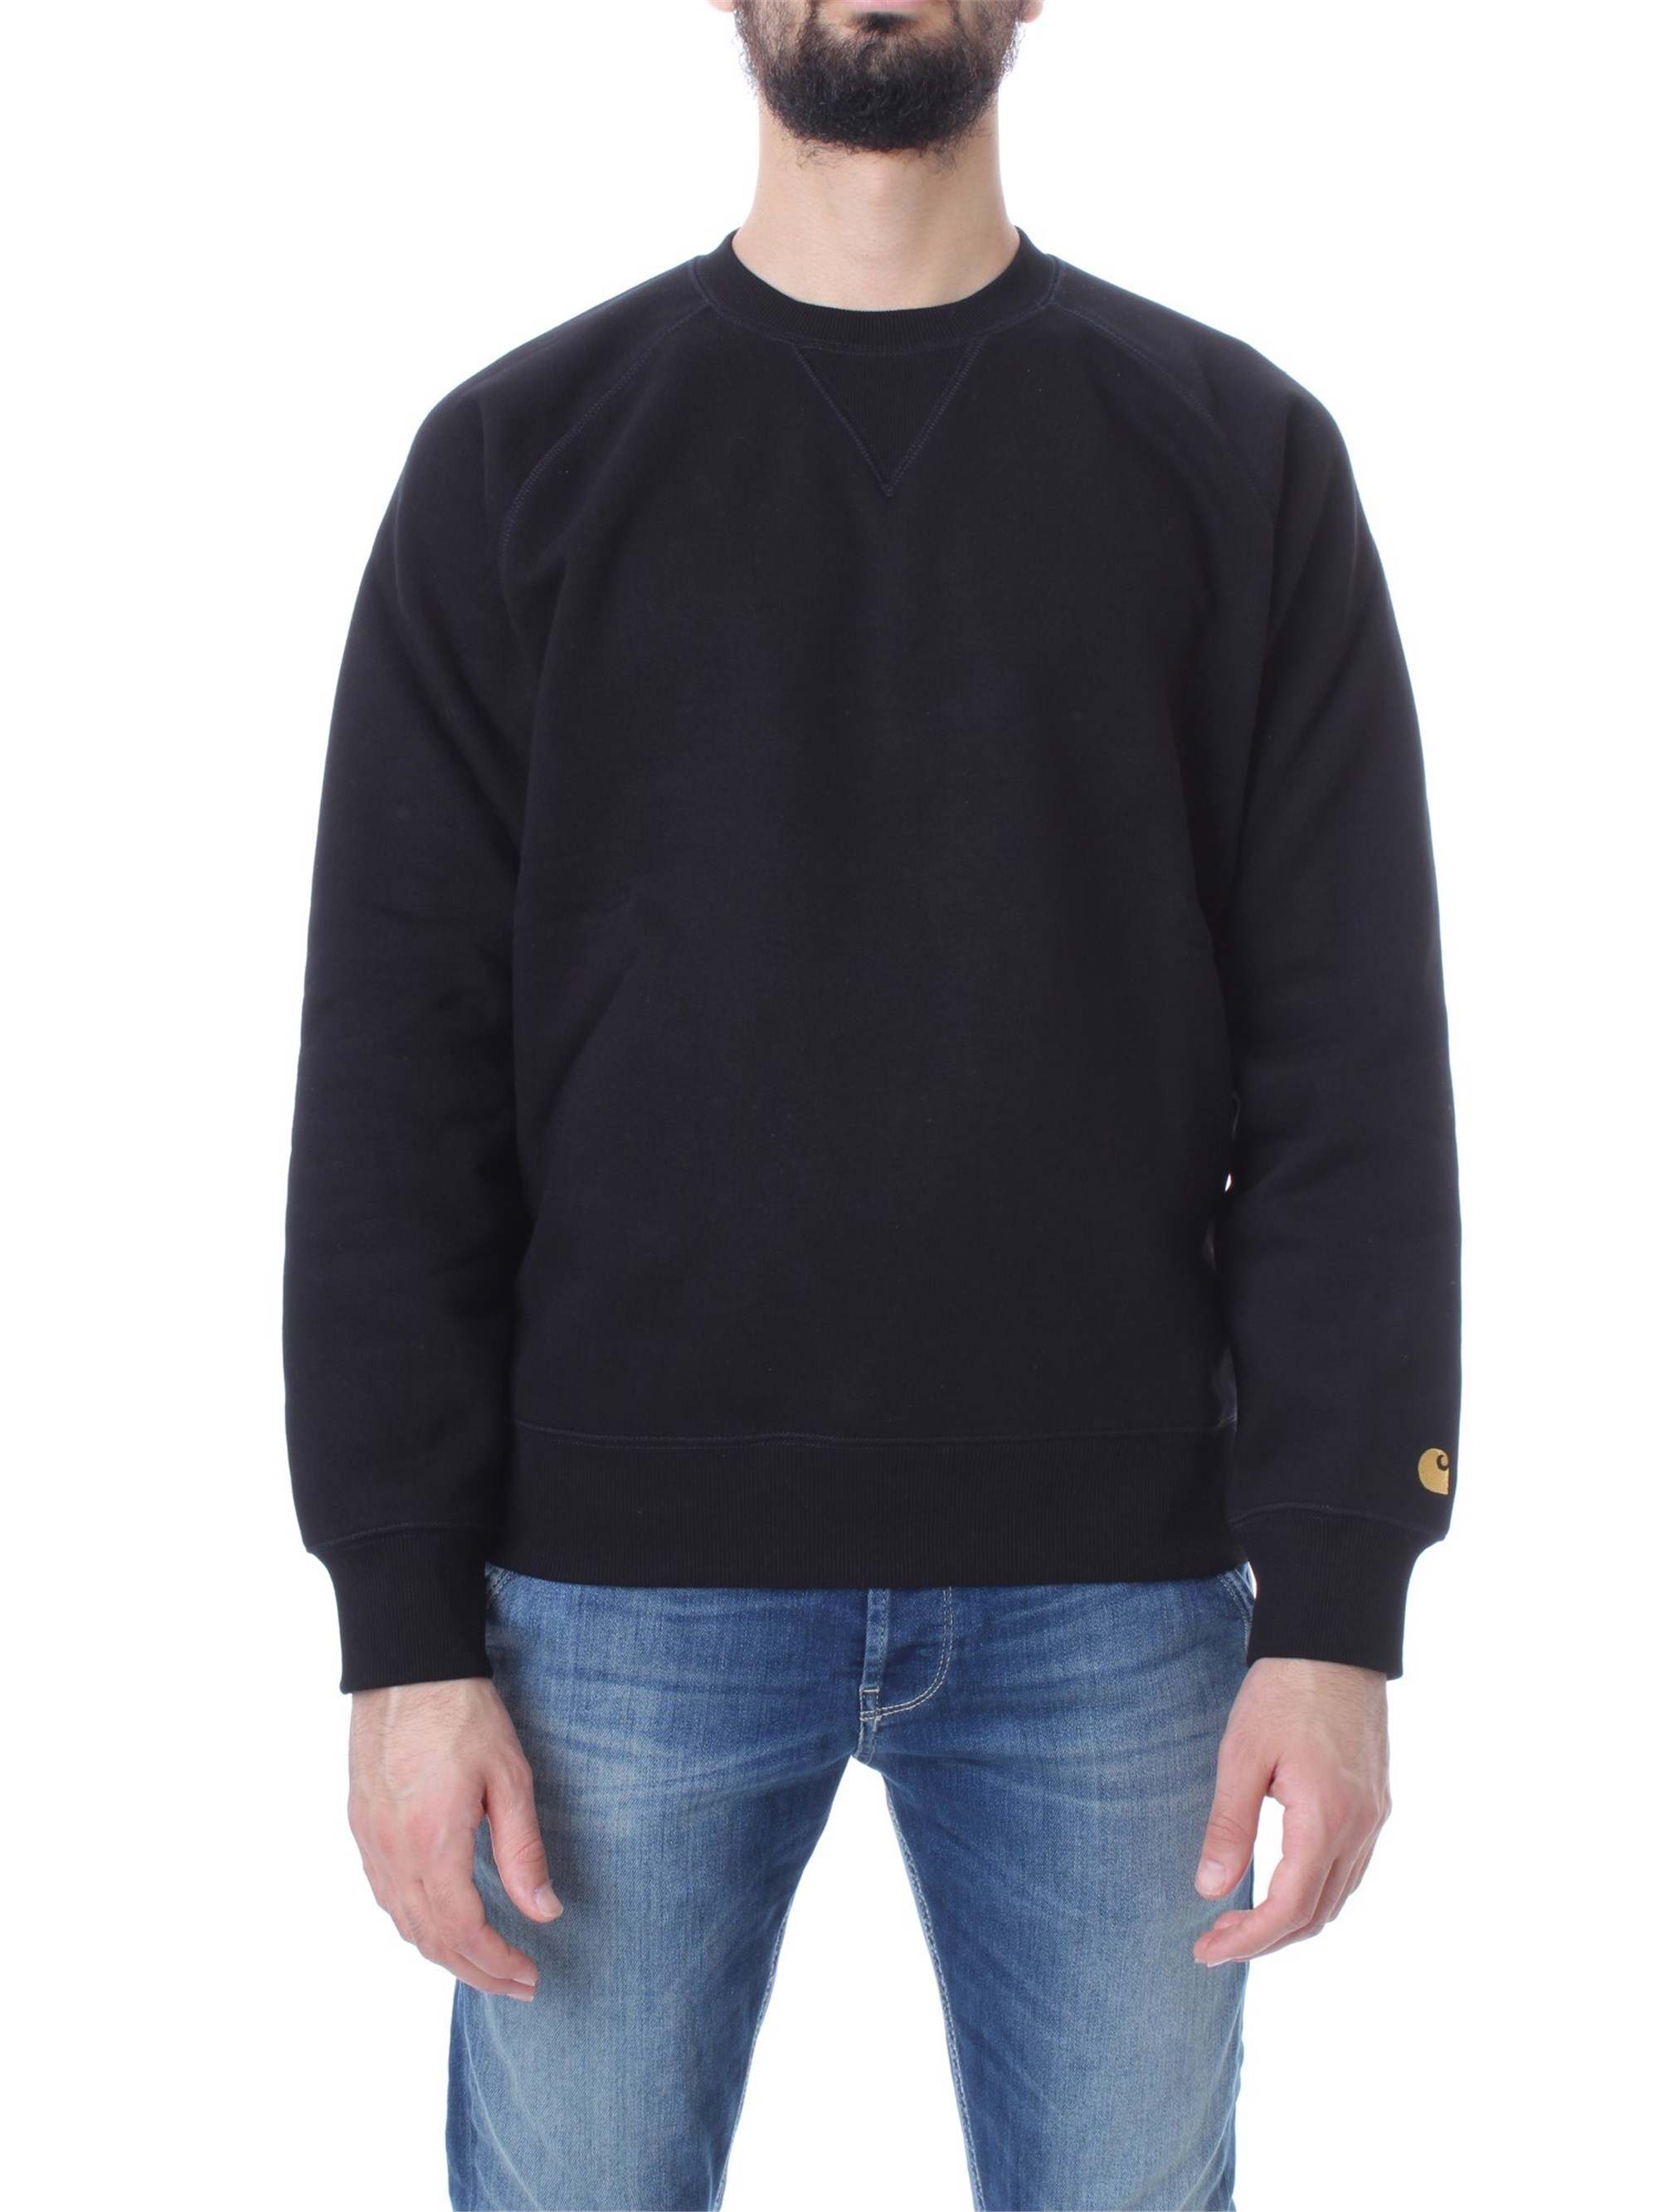 Carhartt WIP – Chase – Sweatshirt in Schwarz günstig online kaufen